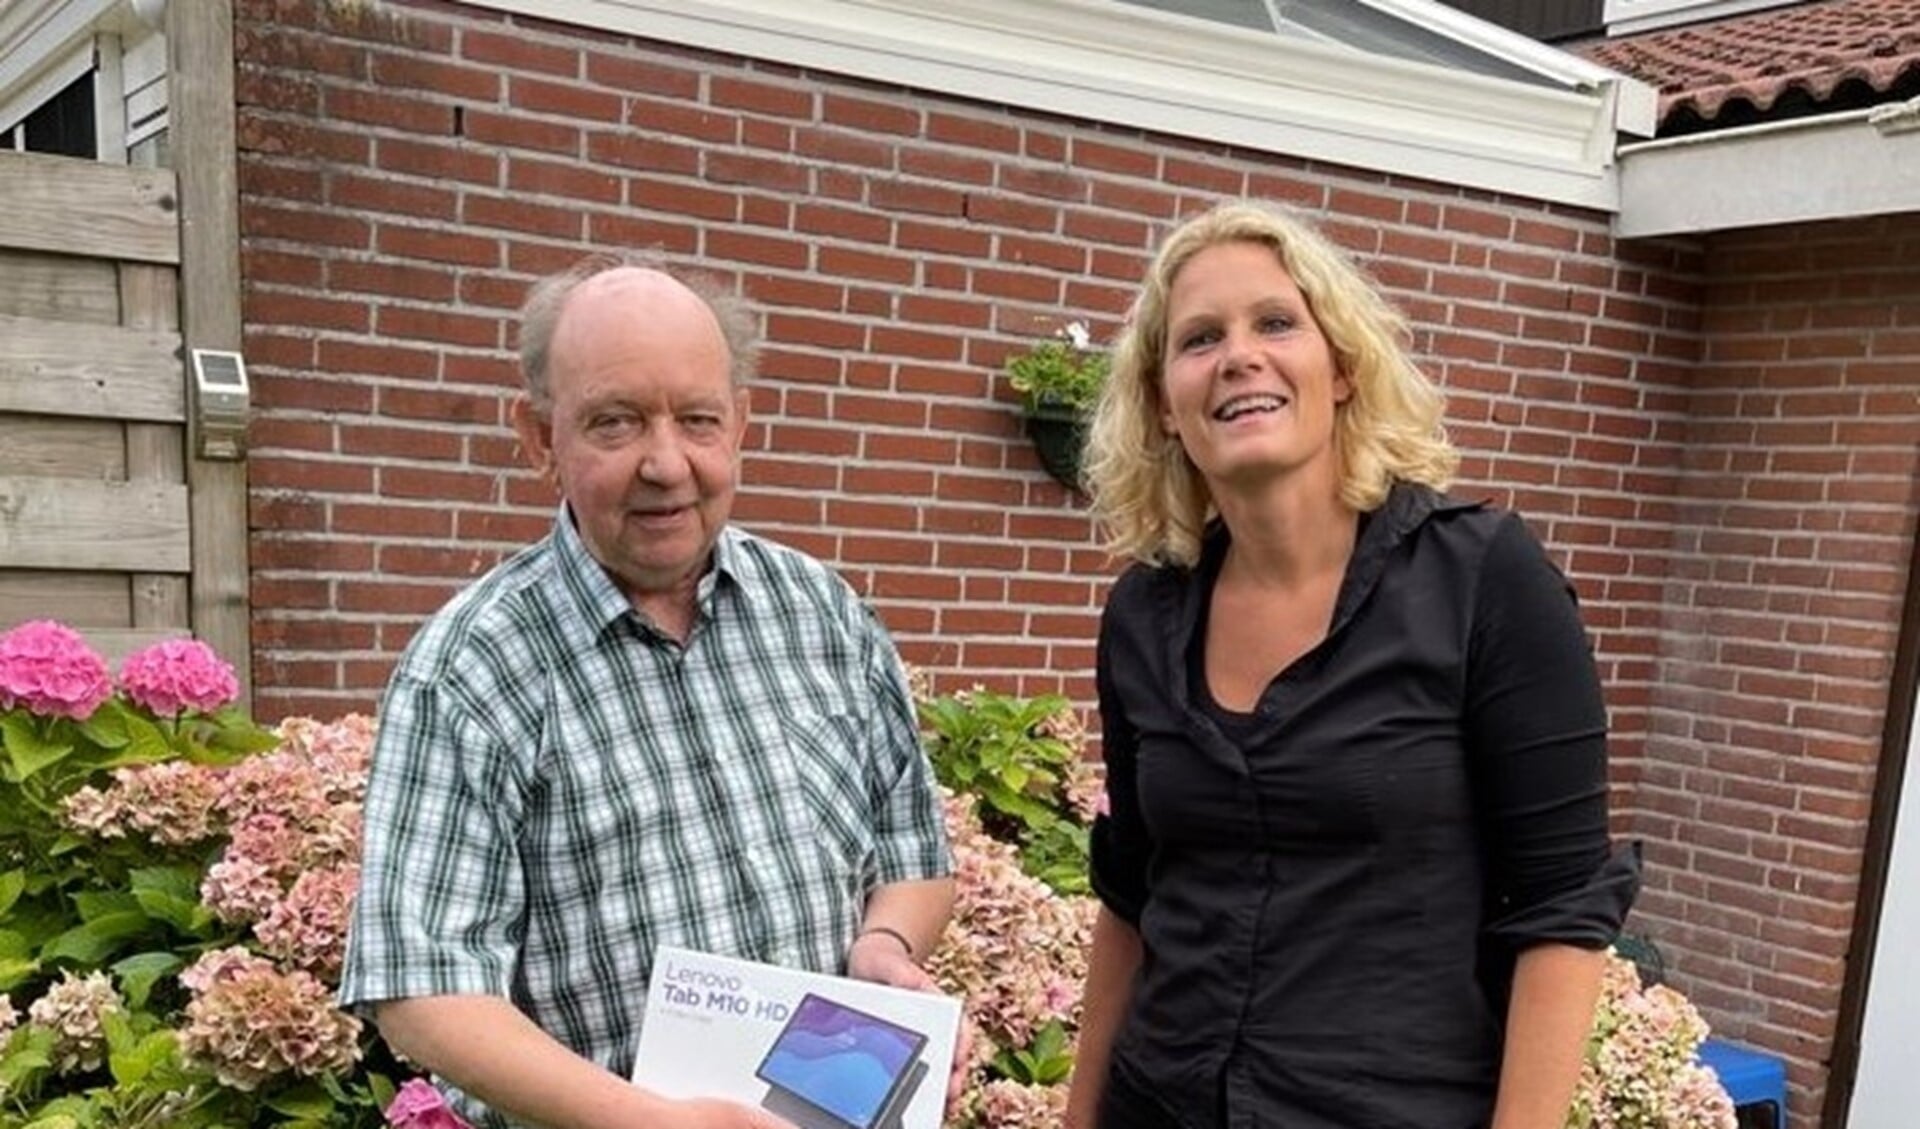 Susanne Schat (Centrum voor Criminaliteitspreventie en Veiligheid) overhandigde uit naam van Stichting WABP.nl de gewonnen tablet aan dhr. Wiewel